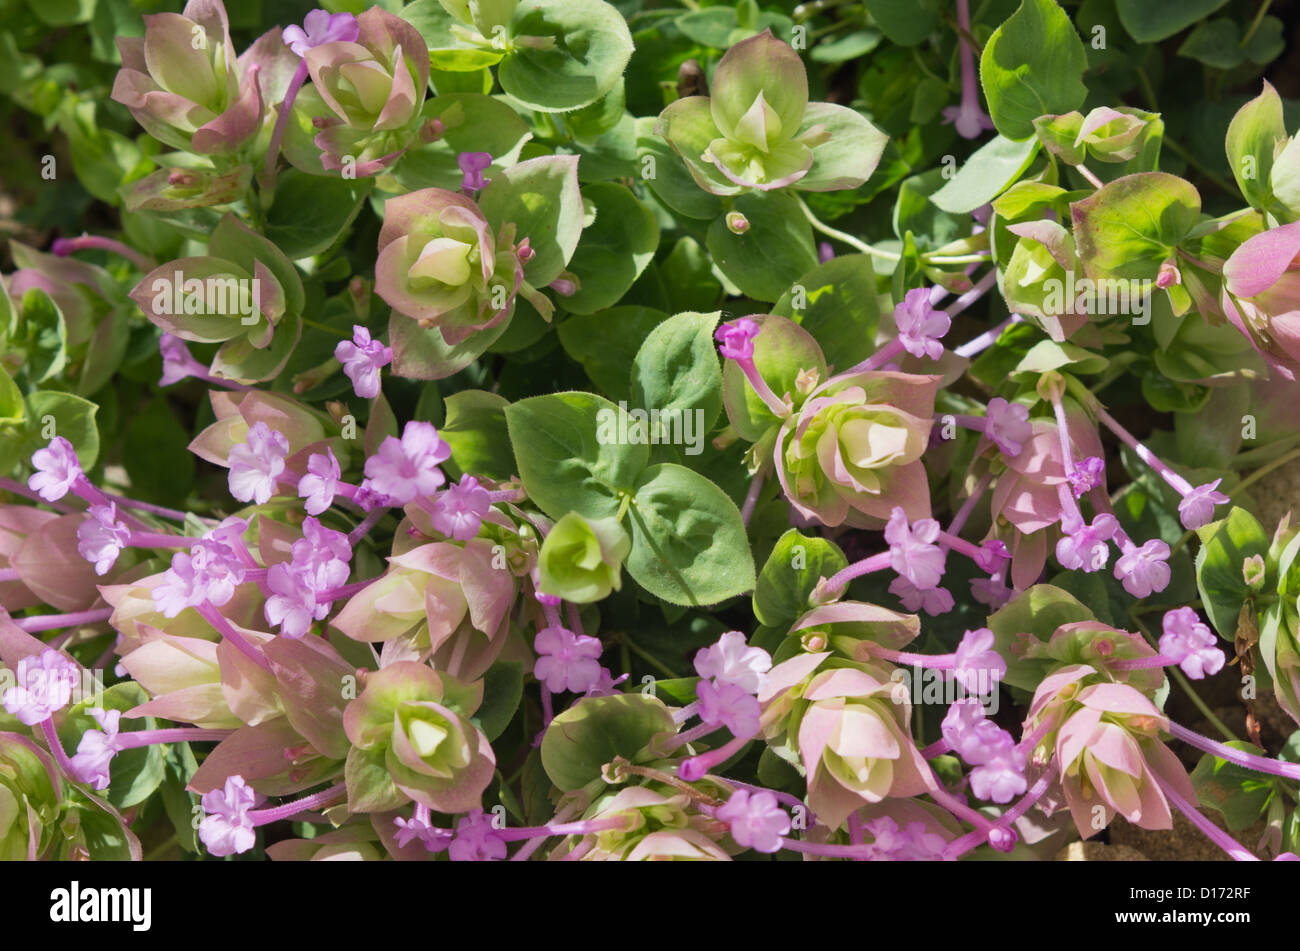 Amanus oregano, Origanum amanum Stock Photo